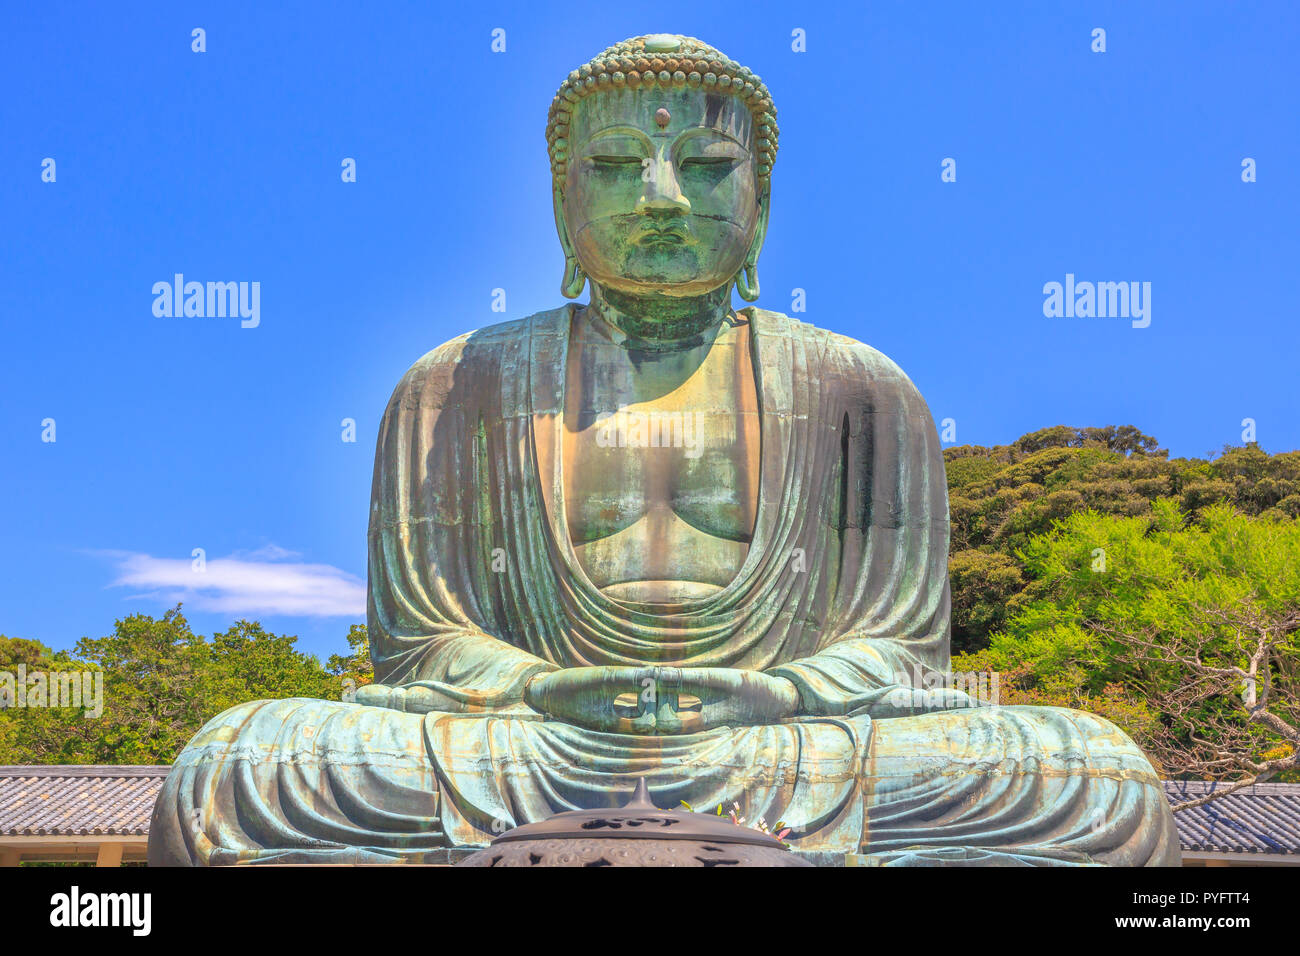 Big Buddha oder Daibutsu auf blauen Himmel, eine der größten Bronze Statue von Buddha Vairocana. Kotoku-in buddhistischen Tempel in Kamakura aus dem alten Japan, im Jahre 1252 gegossen. Stockfoto